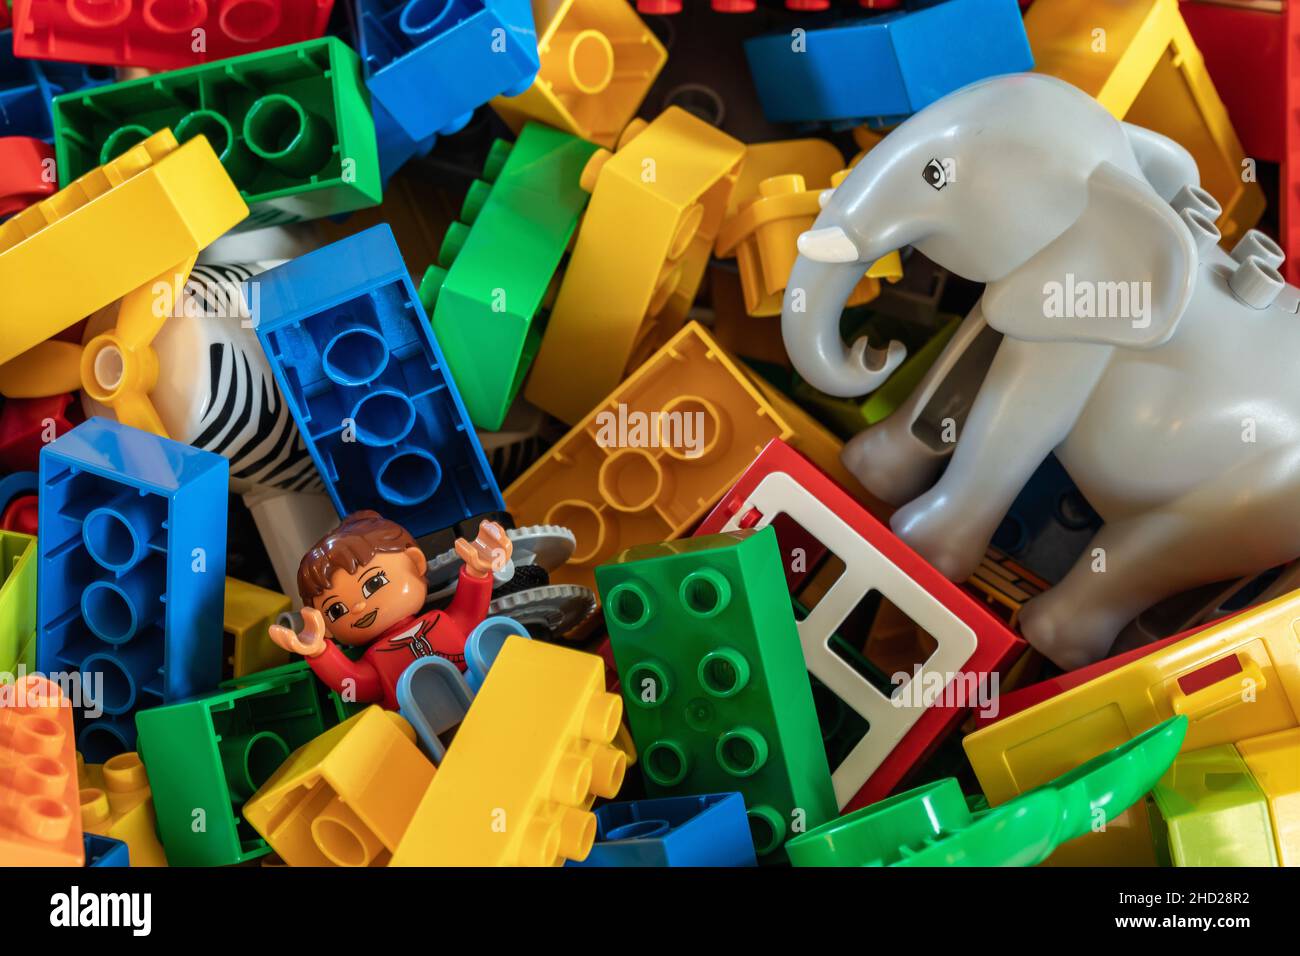 Un assortiment de briques de construction Bright coloré Duplo / Lego pour enfants.Angleterre, Royaume-Uni Banque D'Images